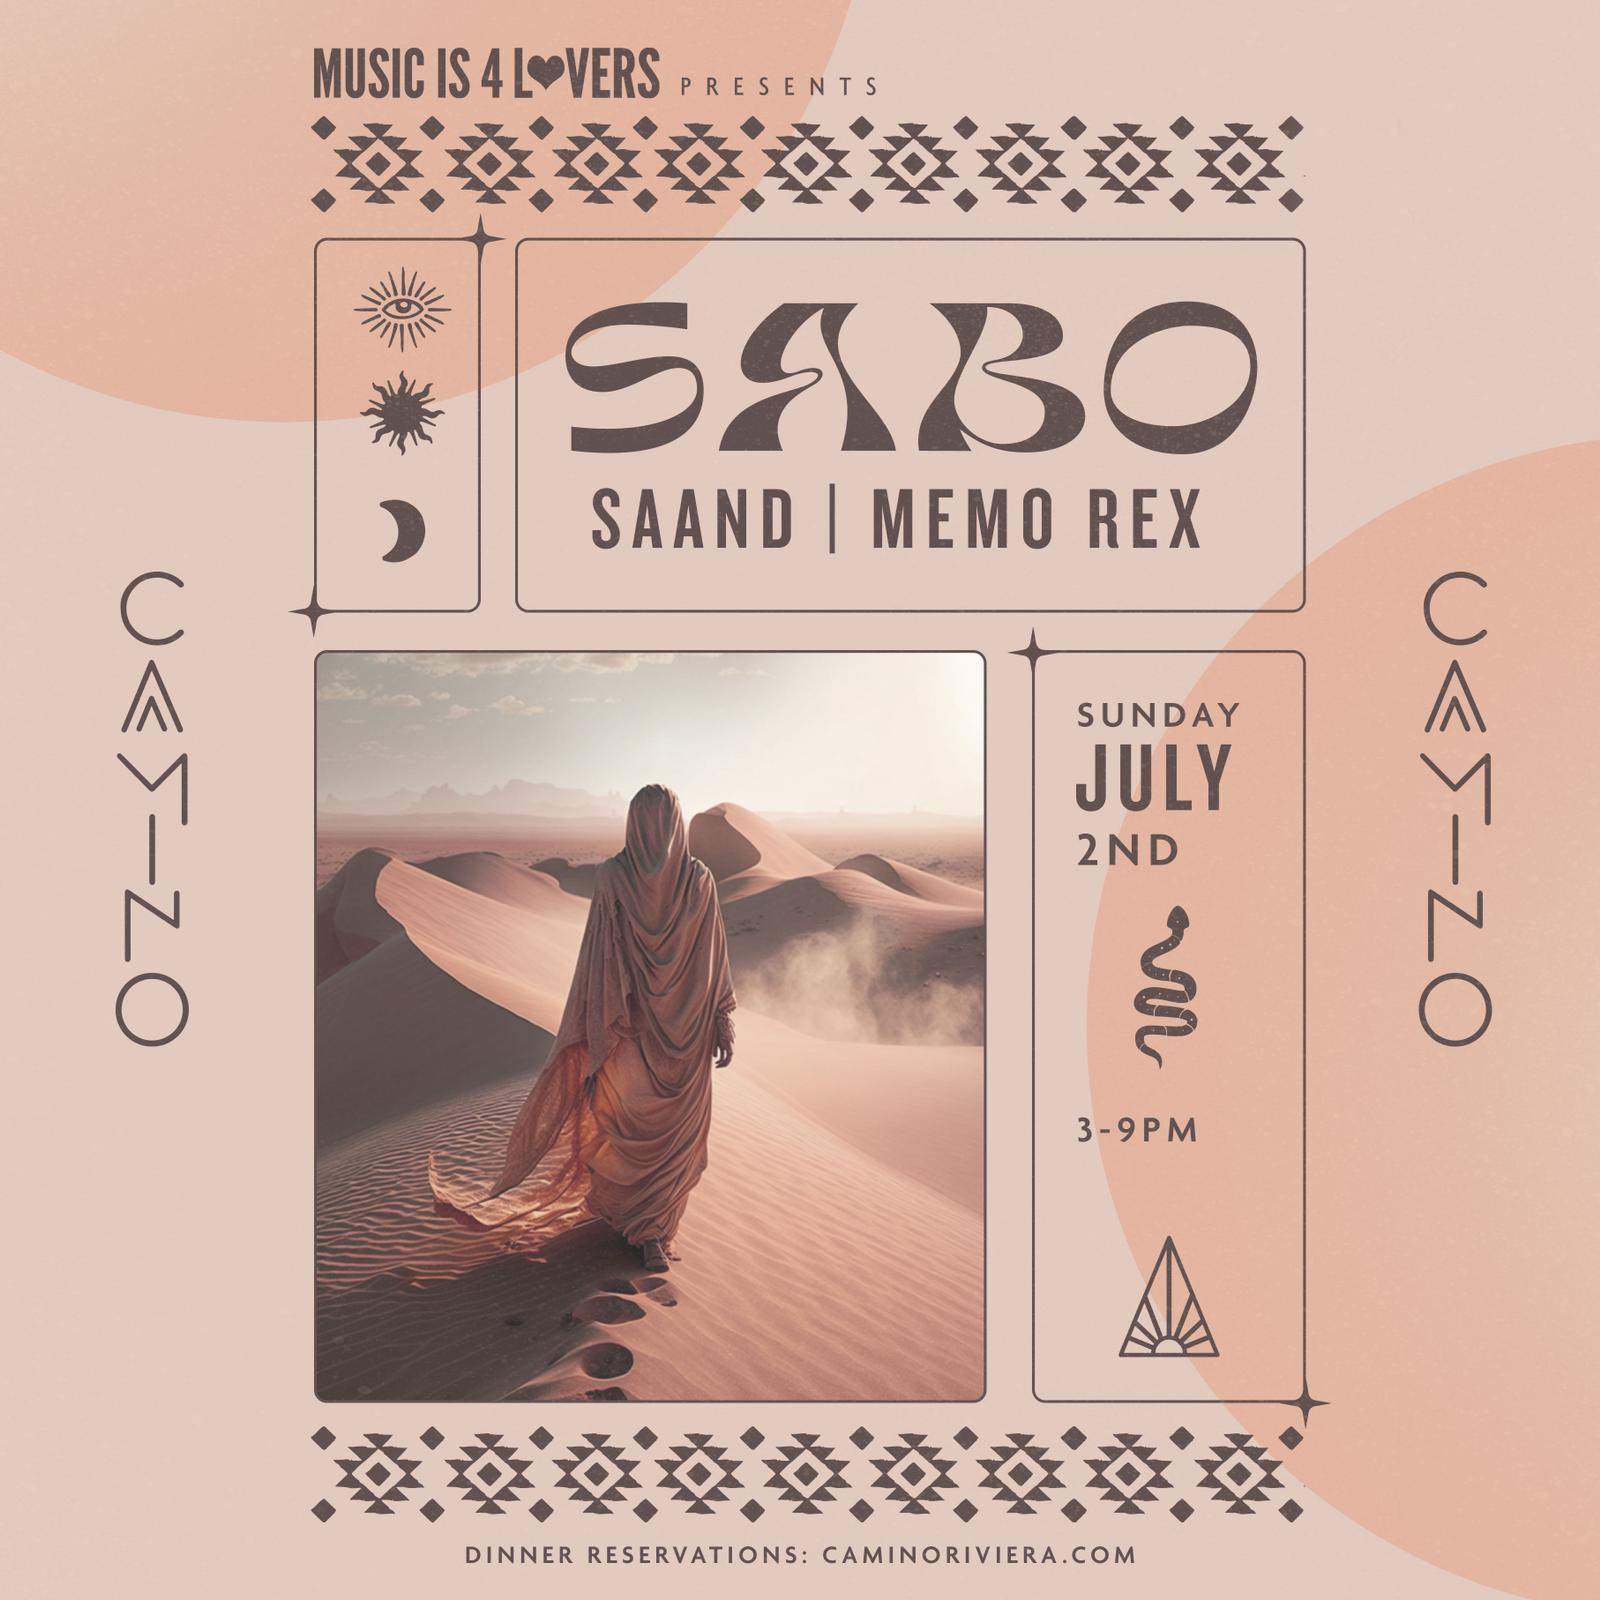 Sabo - NO COVER - Página frontal